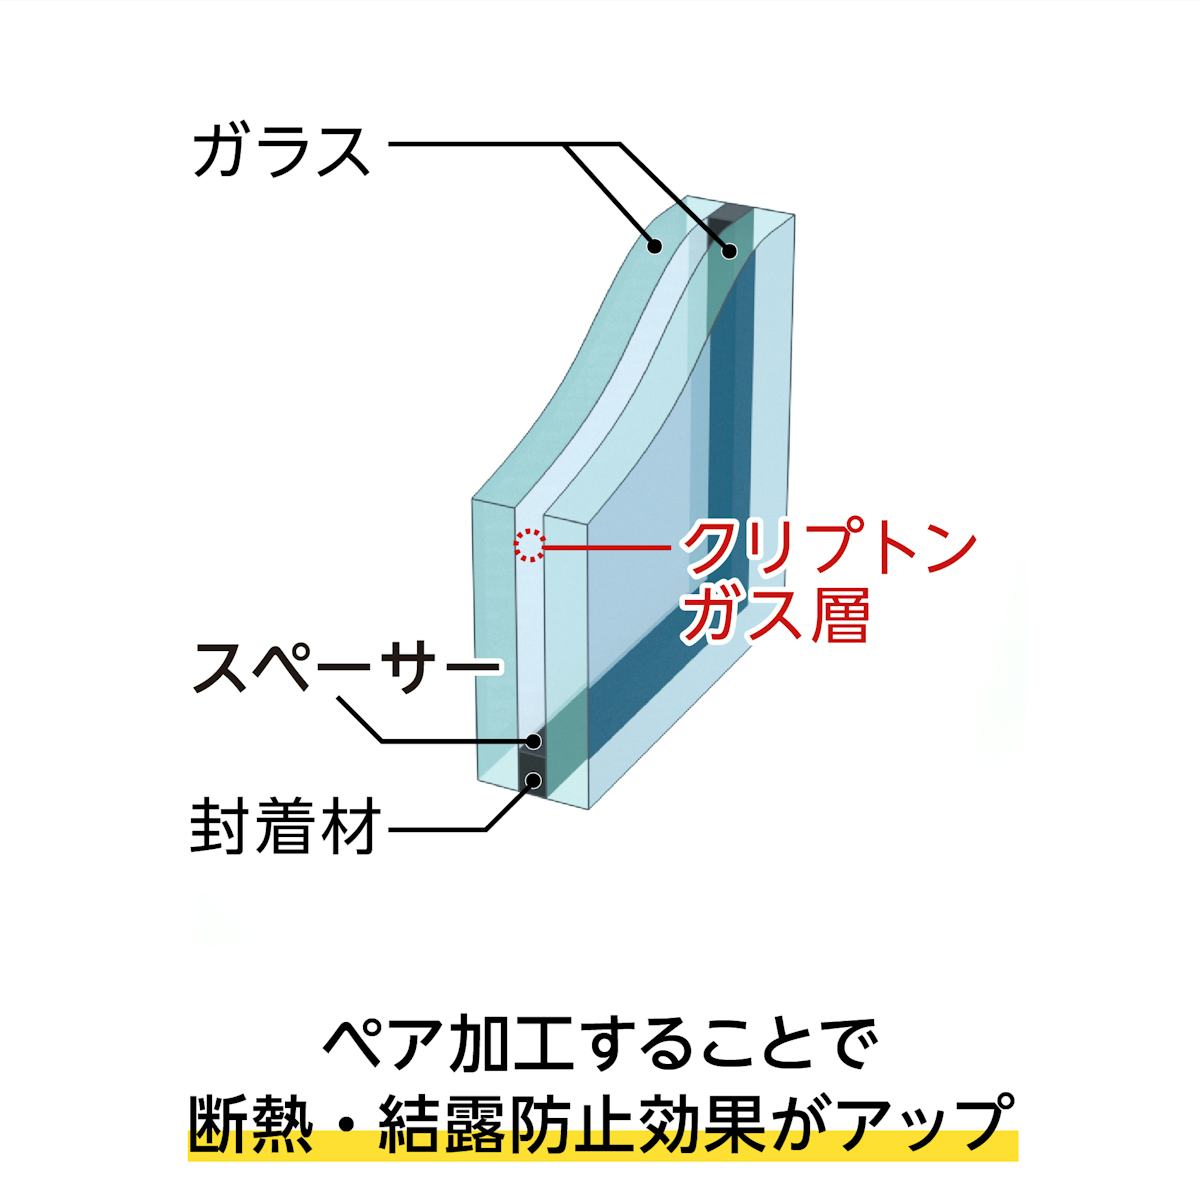 昭和レトロガラス - 屋外窓に使用する場合はペア加工推奨